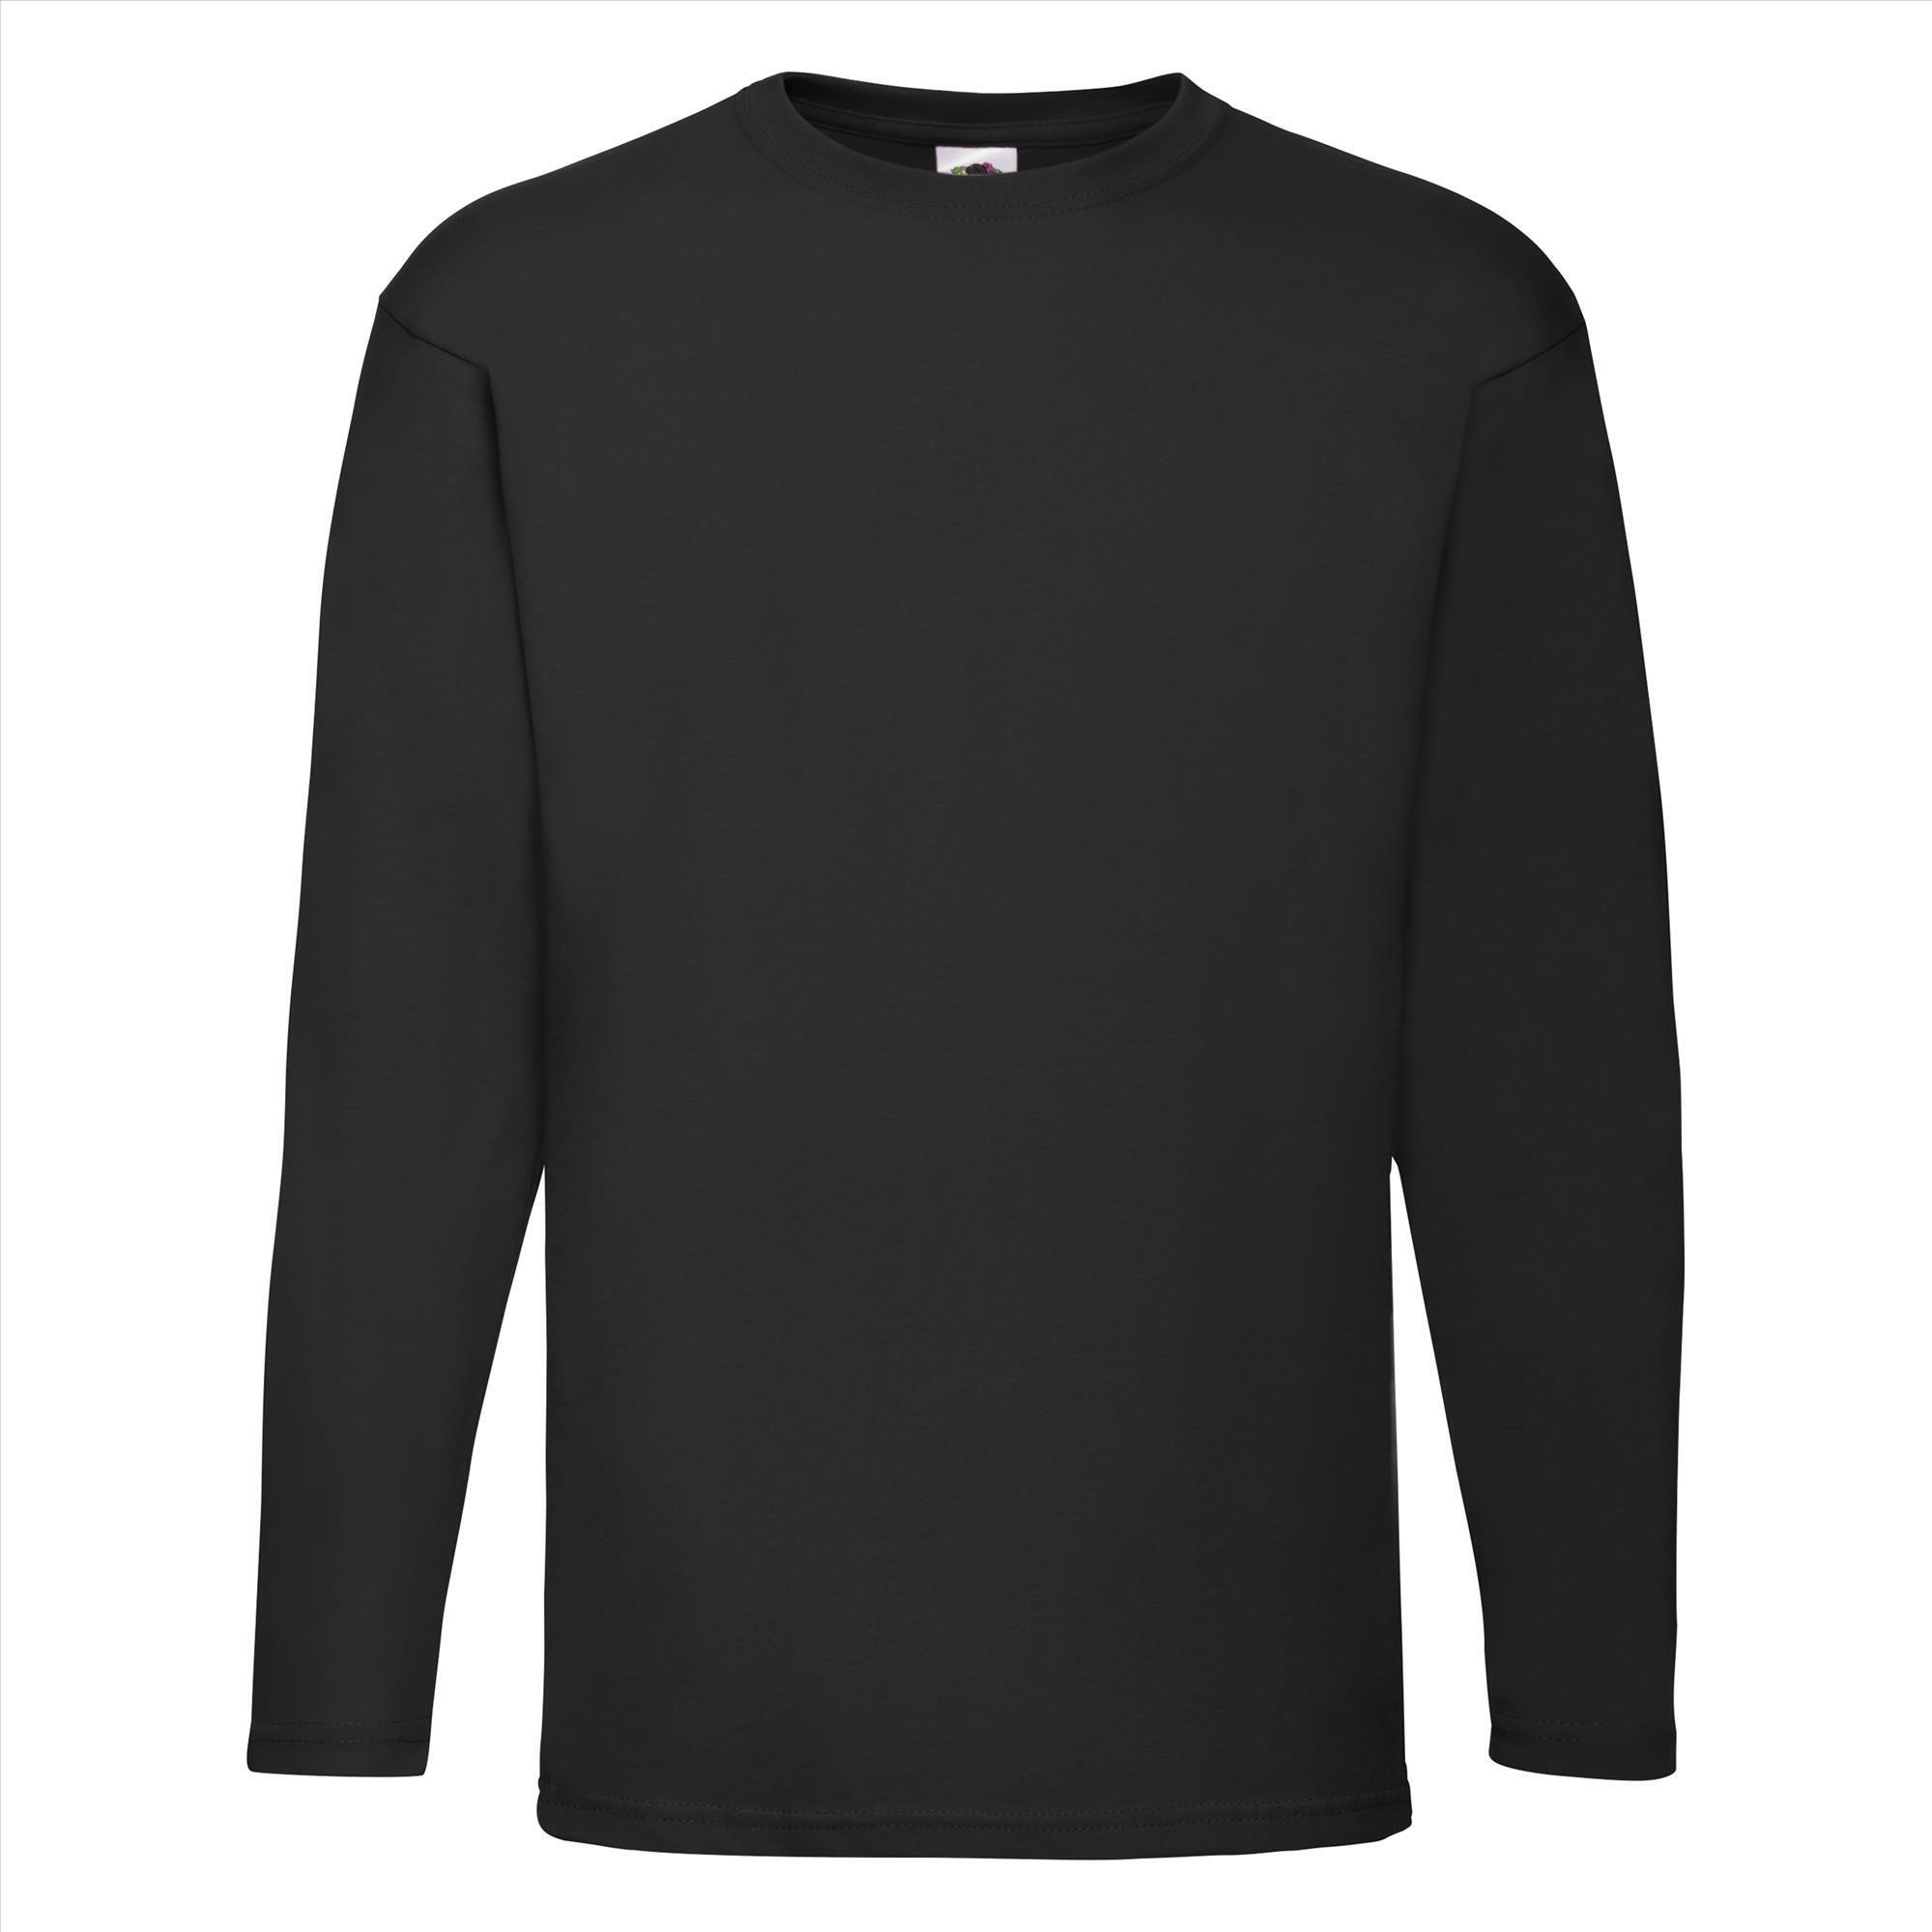 T-shirt zwart lange mouwen voor mannen bedrukbaar te personaliseren